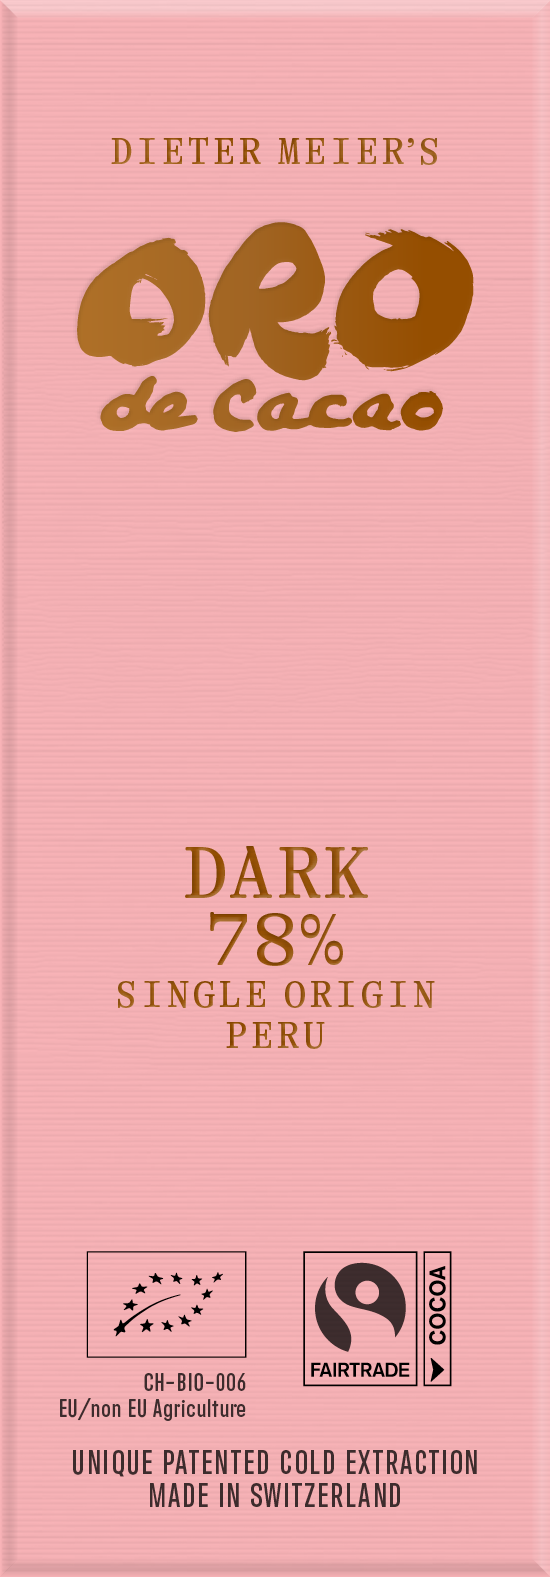 Tafelschokolade Dark 78 Prozent Single Origin Peru